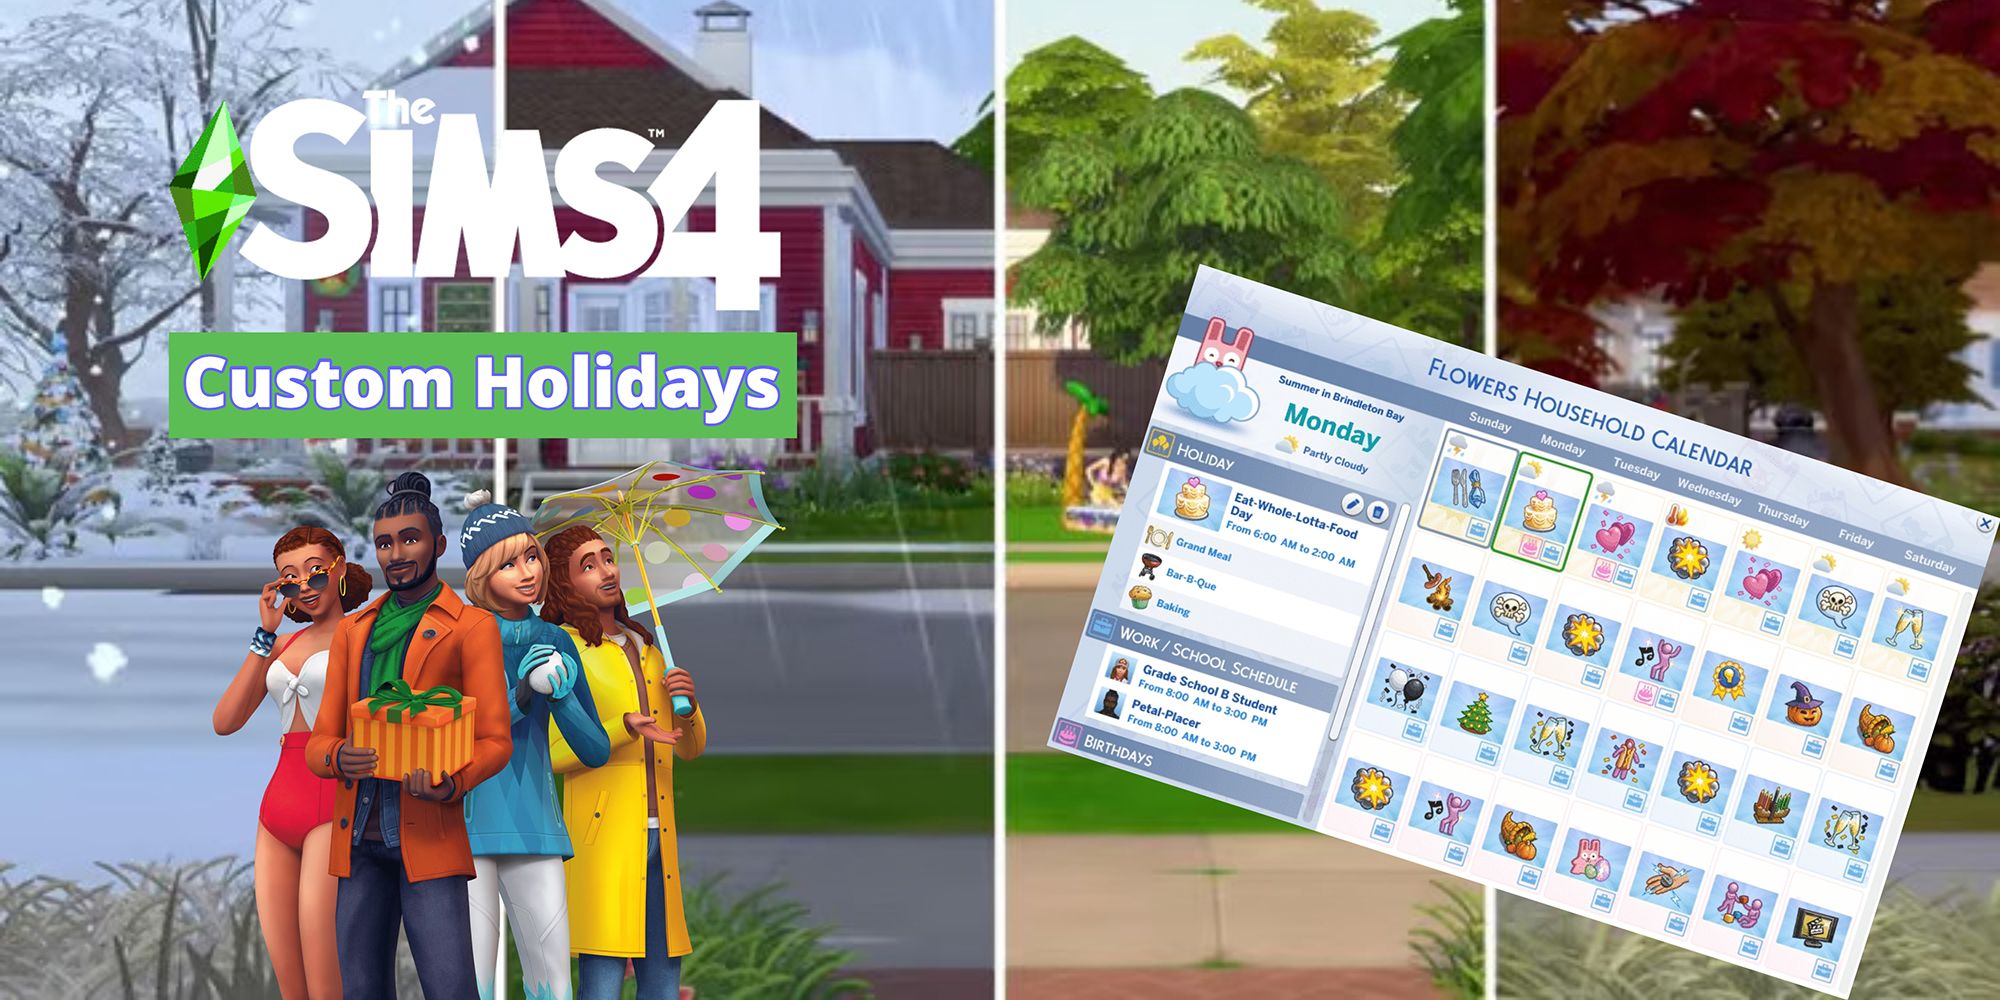 Un collage promotionnel sur les vacances personnalisées dans les Sims 4 